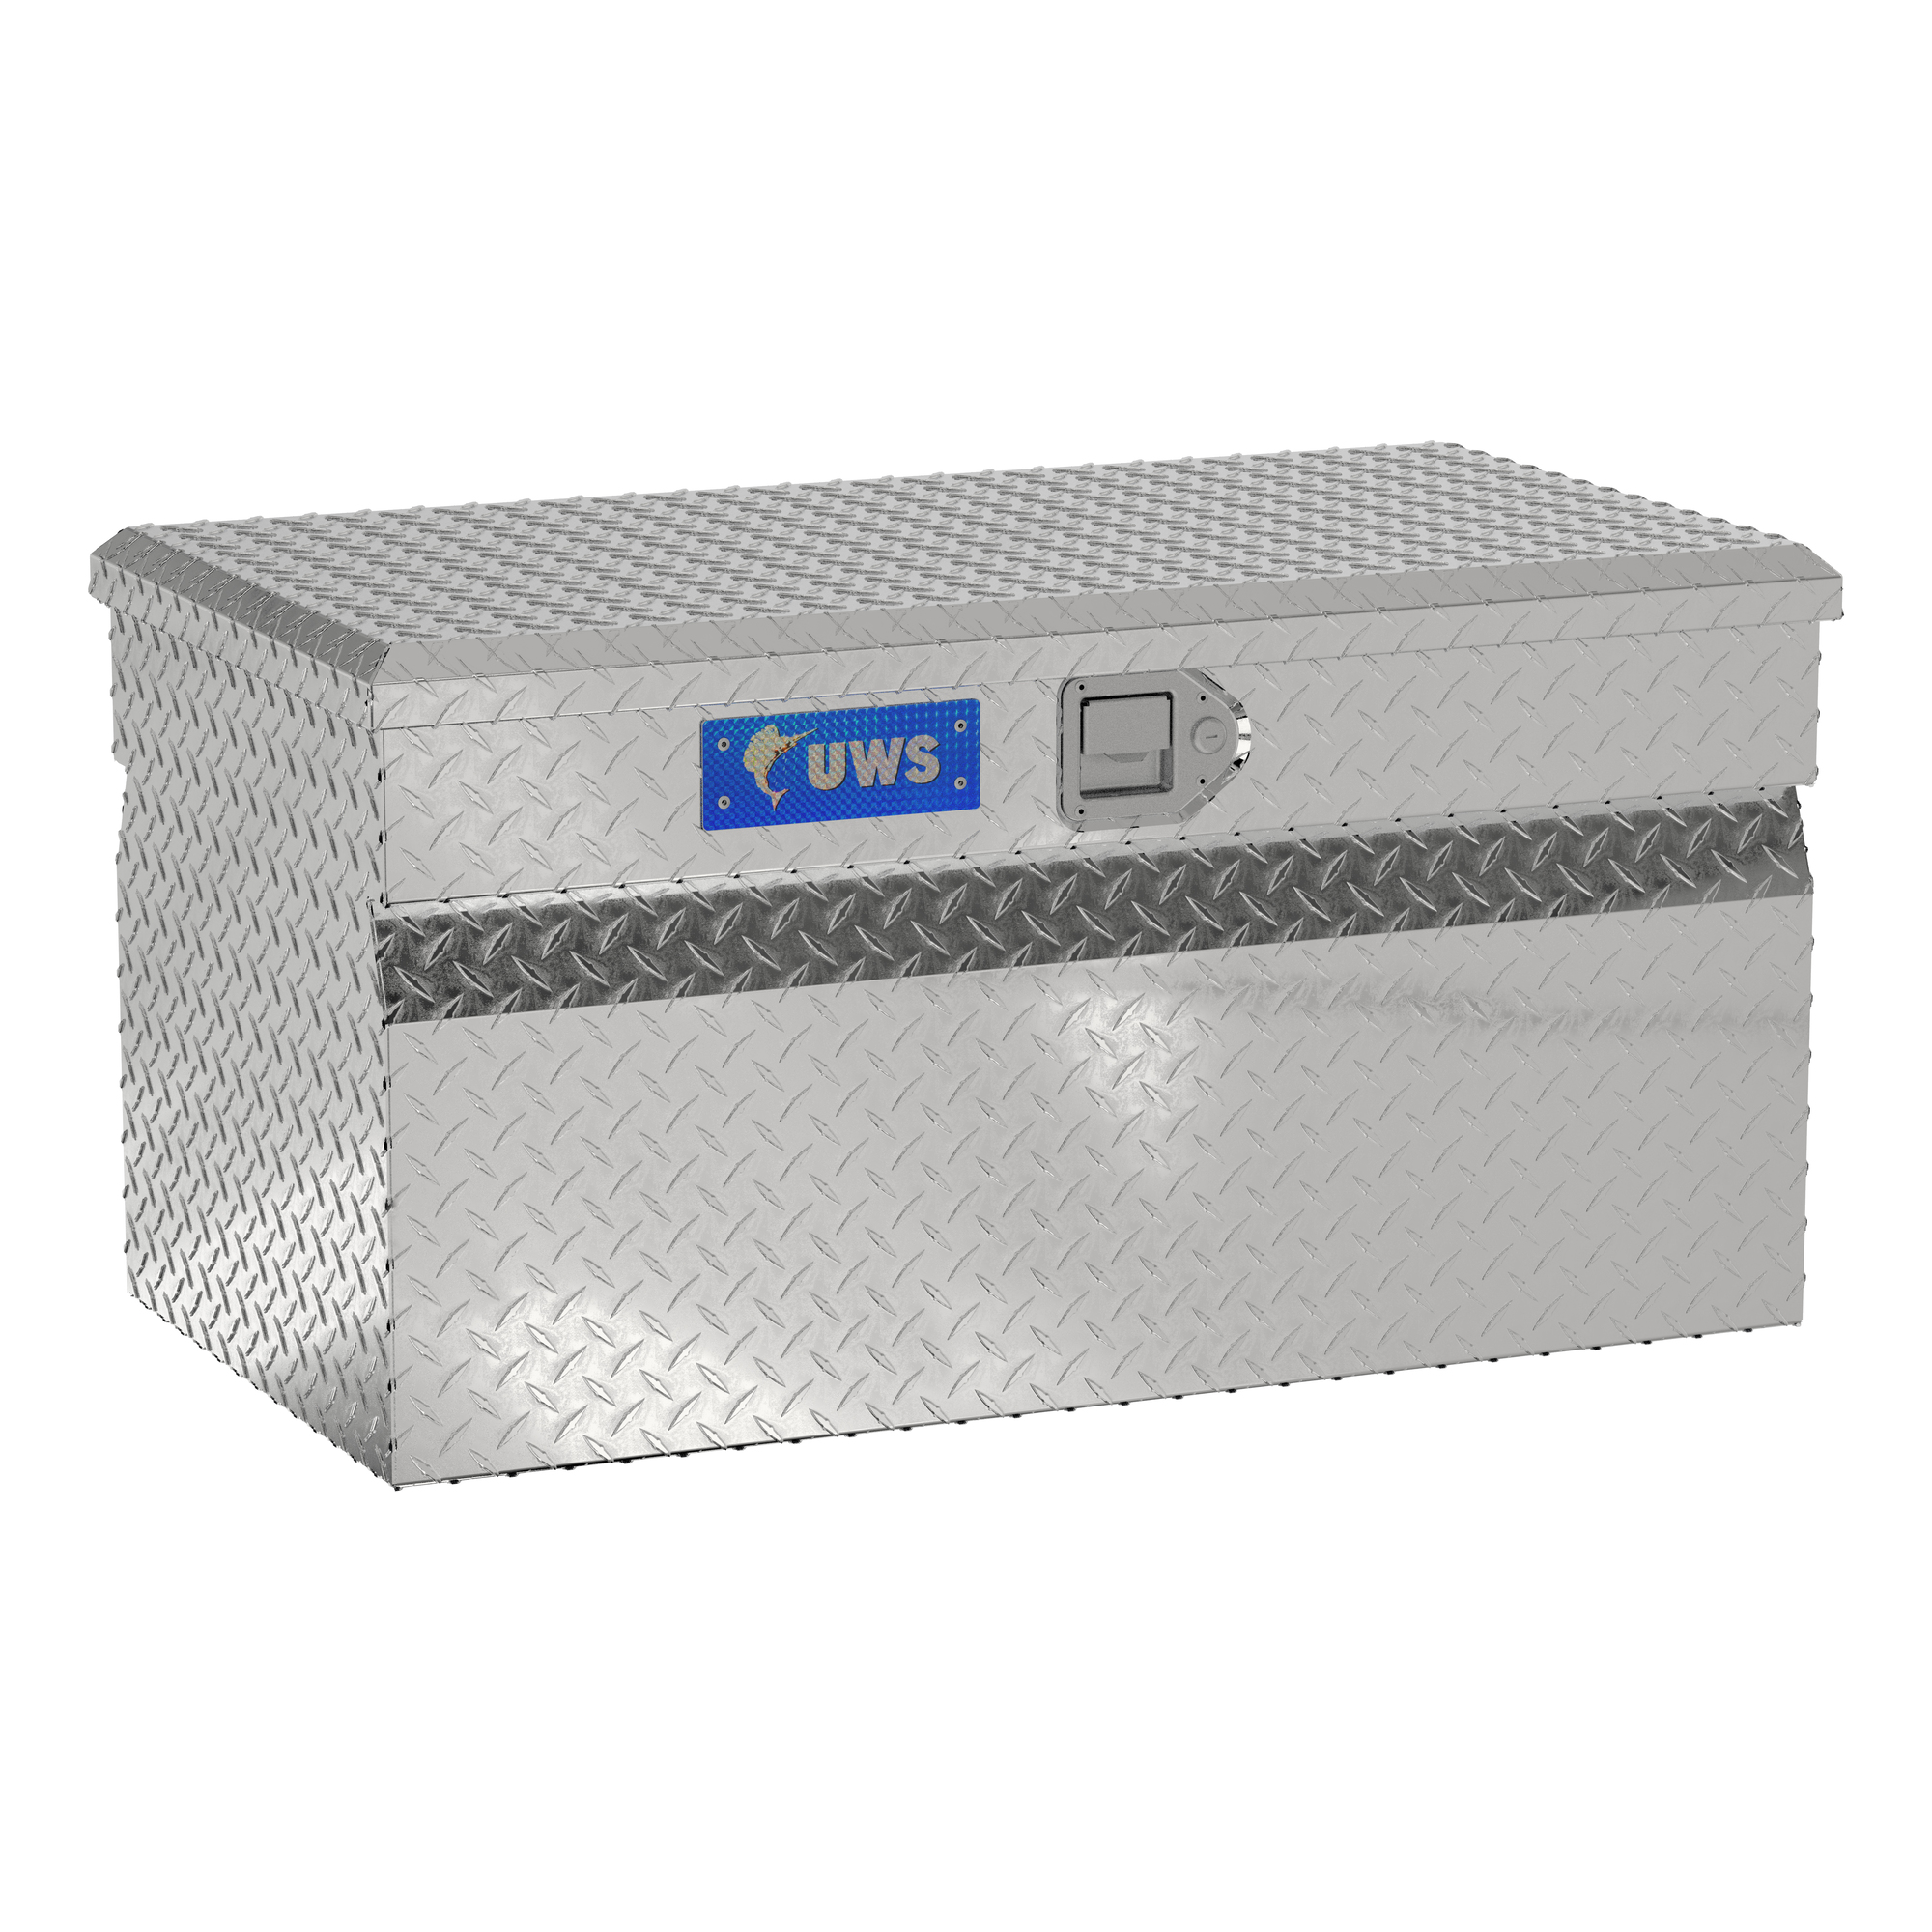 UWS, 36Inch Utility Chest Box, Width 36.875 in, Material Aluminum, Color Finish Bright Aluminum, Model EC20141